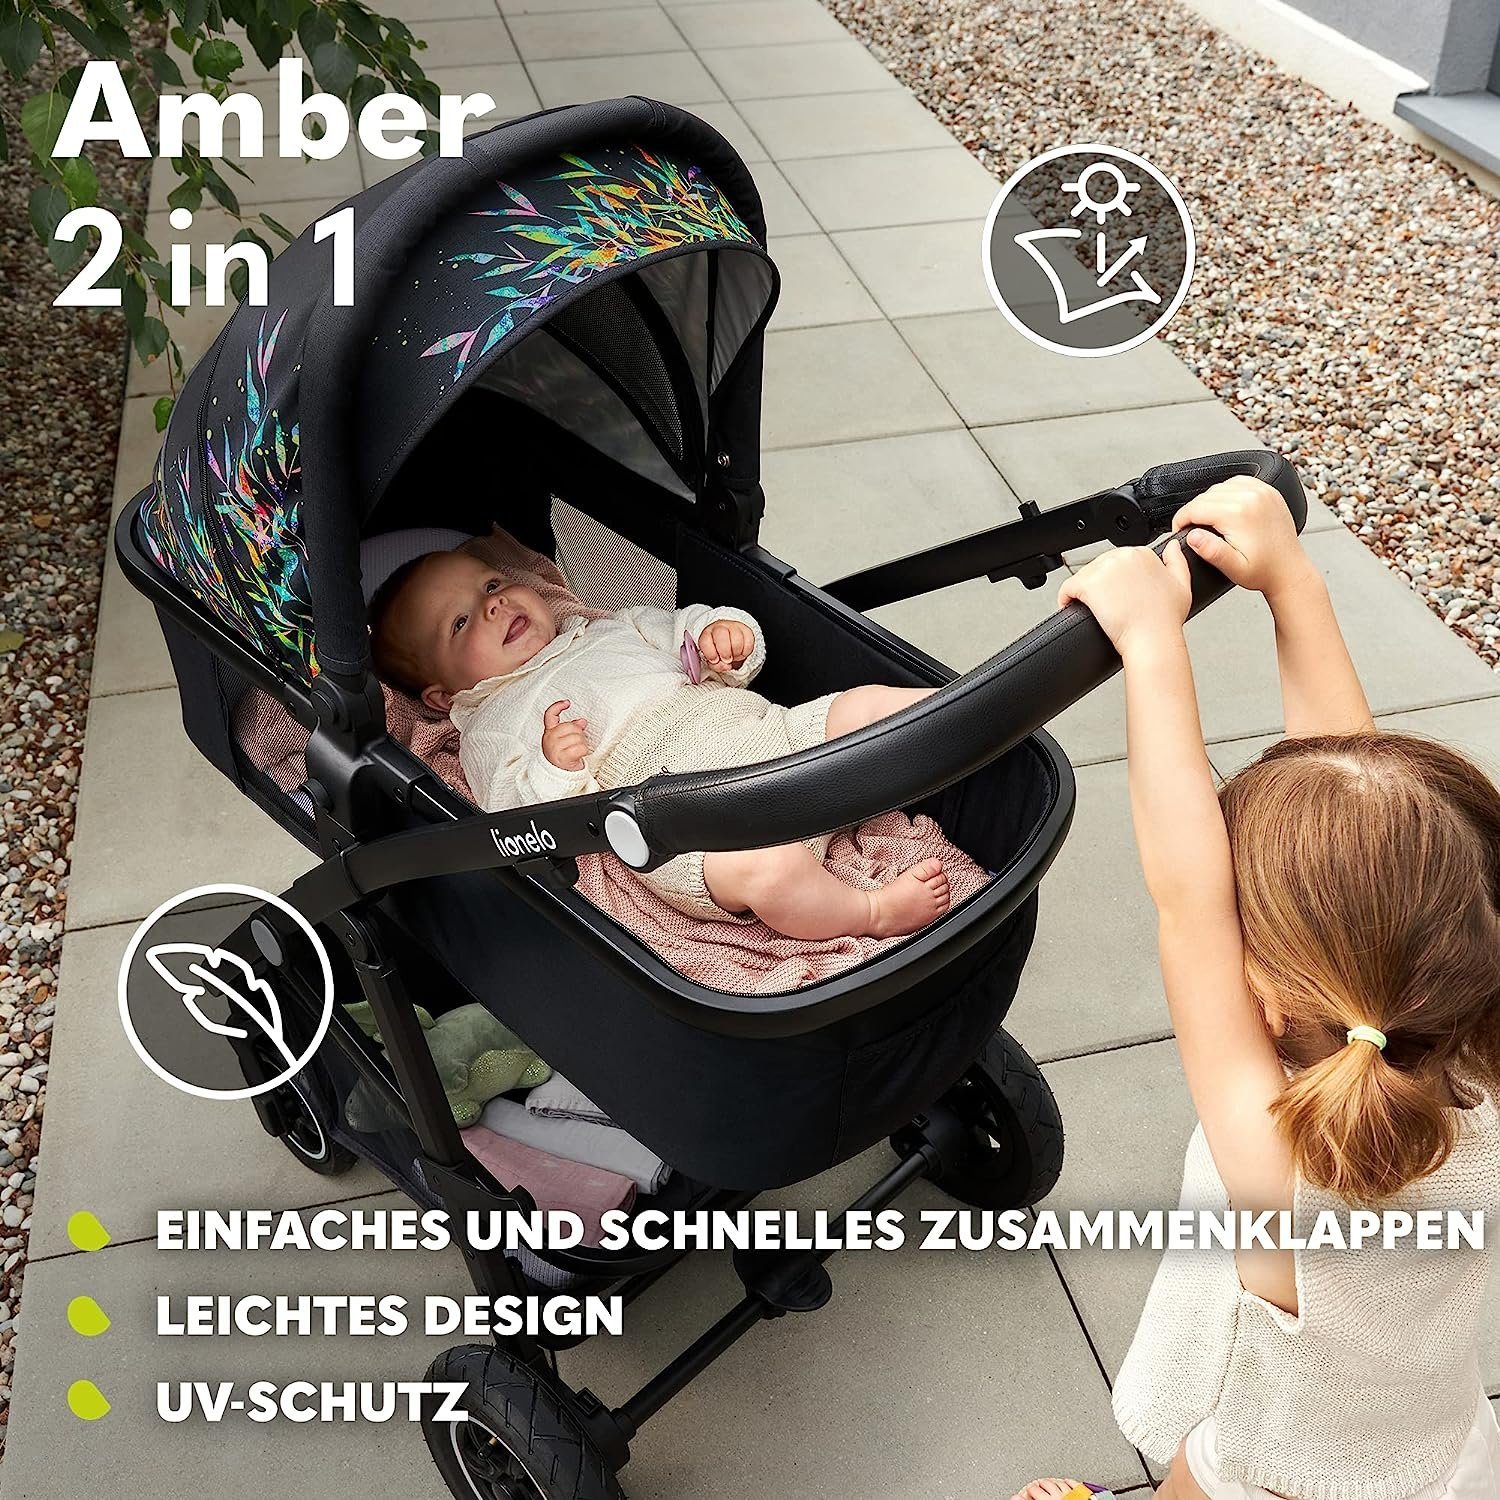 lionelo Kombi-Kinderwagen Amber, Tasche Moskitonetz Rosa 2in1 Regenschutz Schutzüberzug